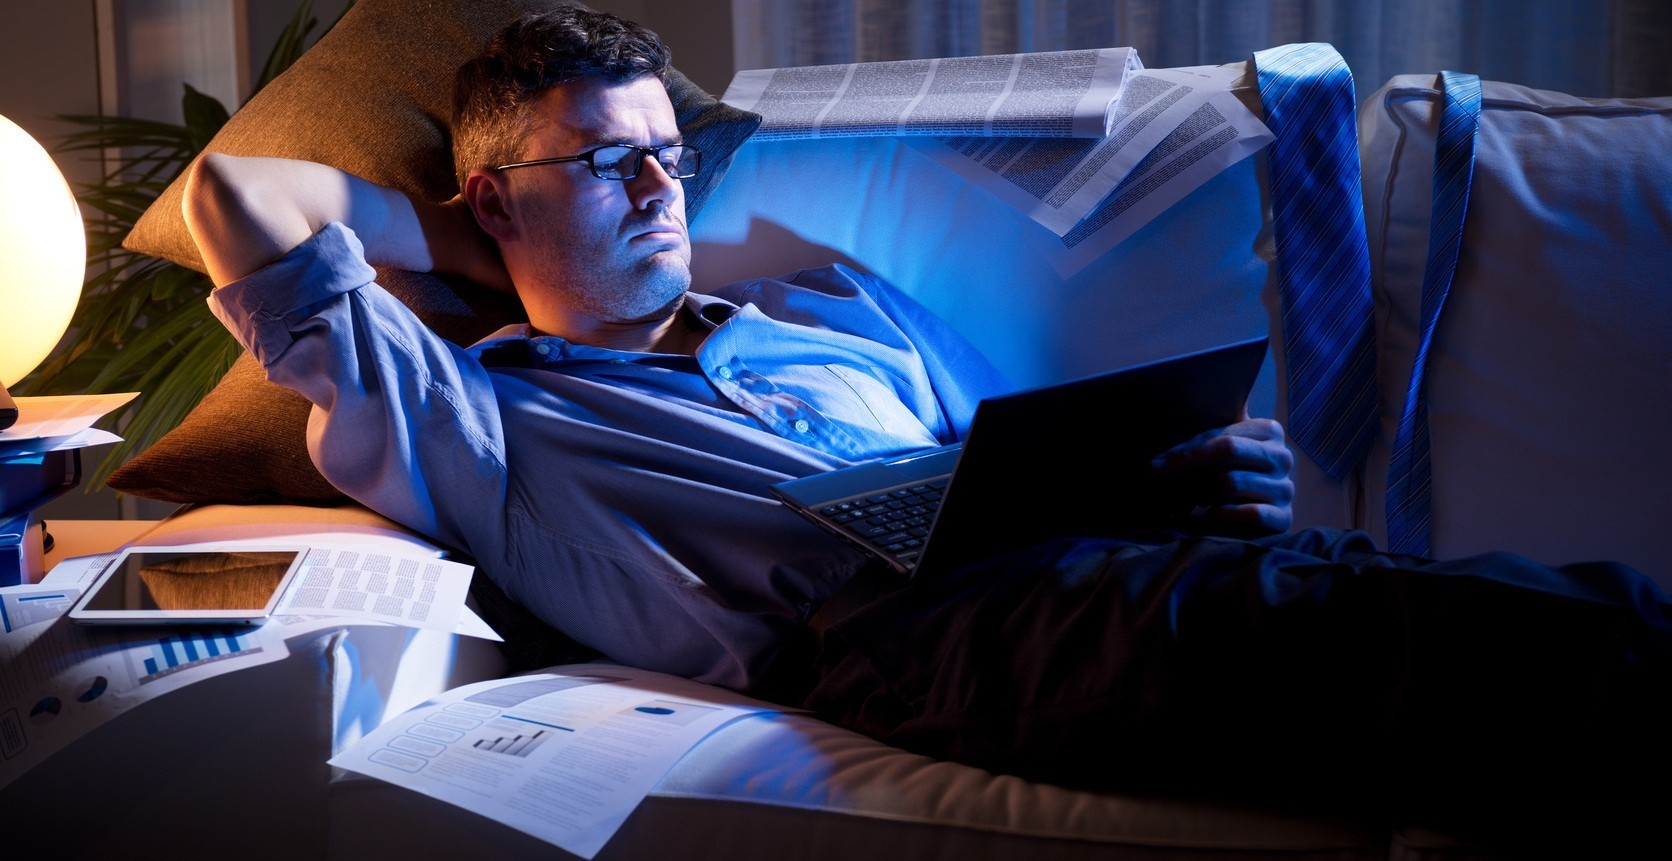 Вечер уставшего мужчины. Человек перед компьютером. Сидит за компьютером ночью. Человек сидит за компьютером ночью. Сидит перед компьютером.